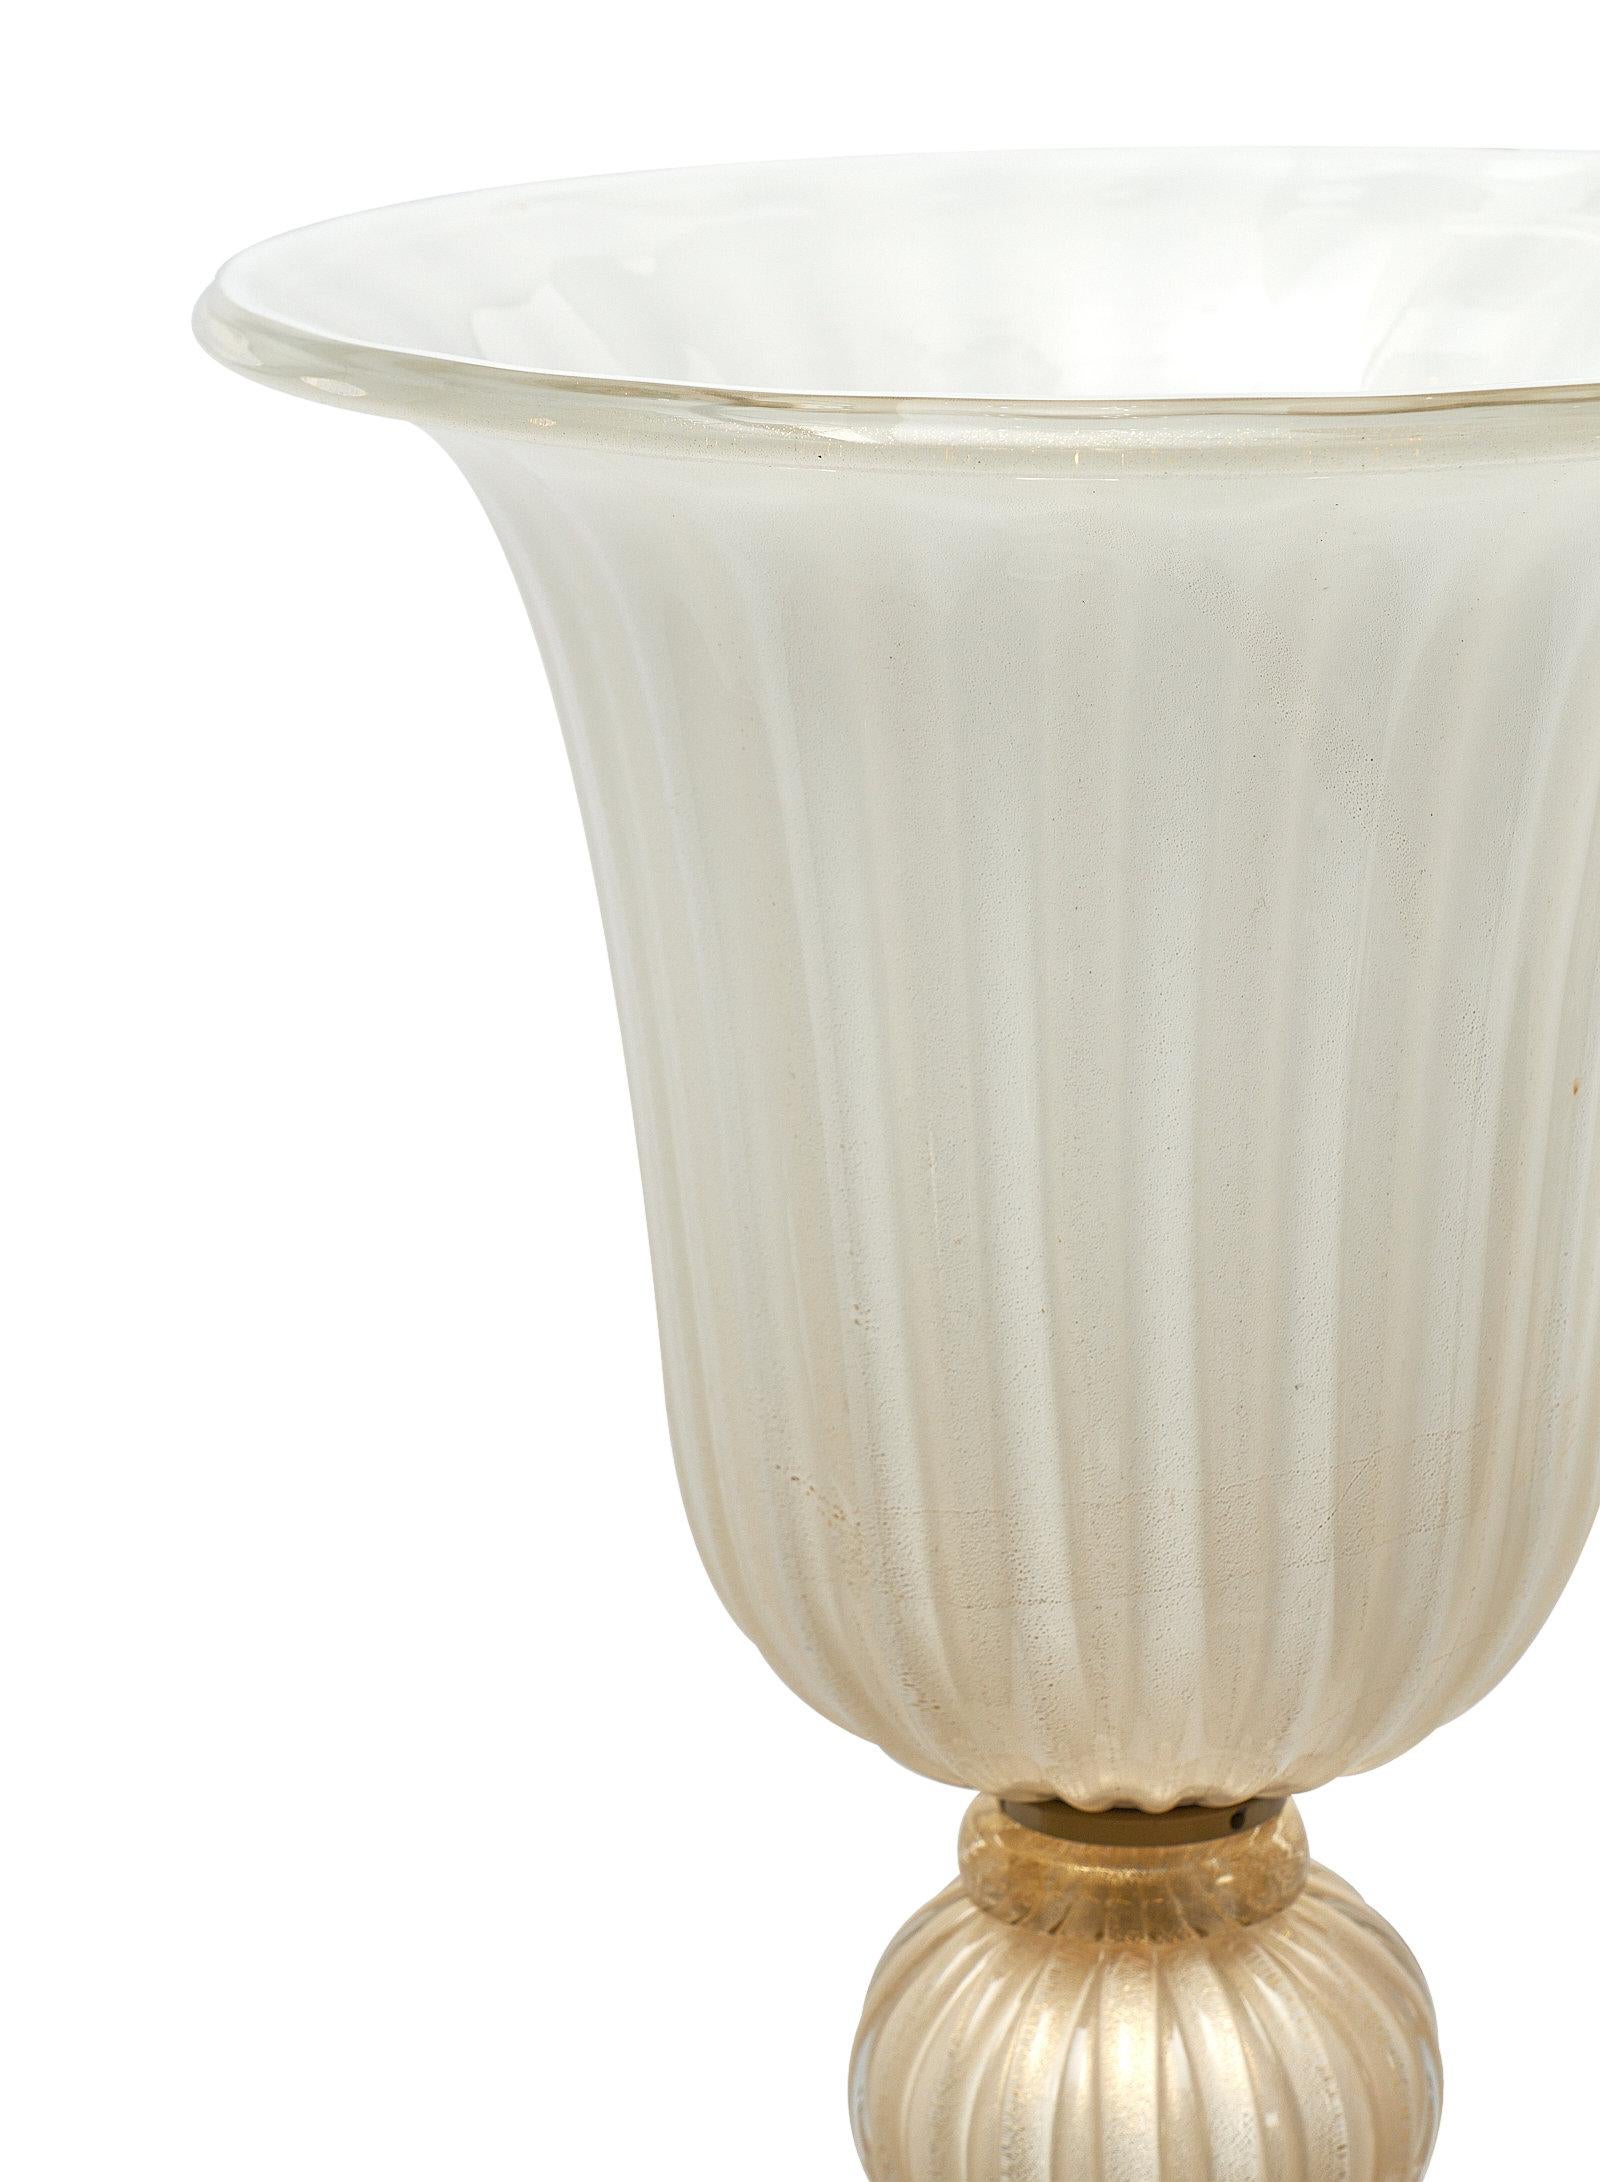 Une superbe paire de lampadaires en verre de Murano ivoire et or. Cette paire comporte 16 sphères striées de couleur ivoire sur chaque luminaire. Le verre soufflé à la main est fusionné avec des mouchetures d'or 23 carats. Ils ont été nouvellement